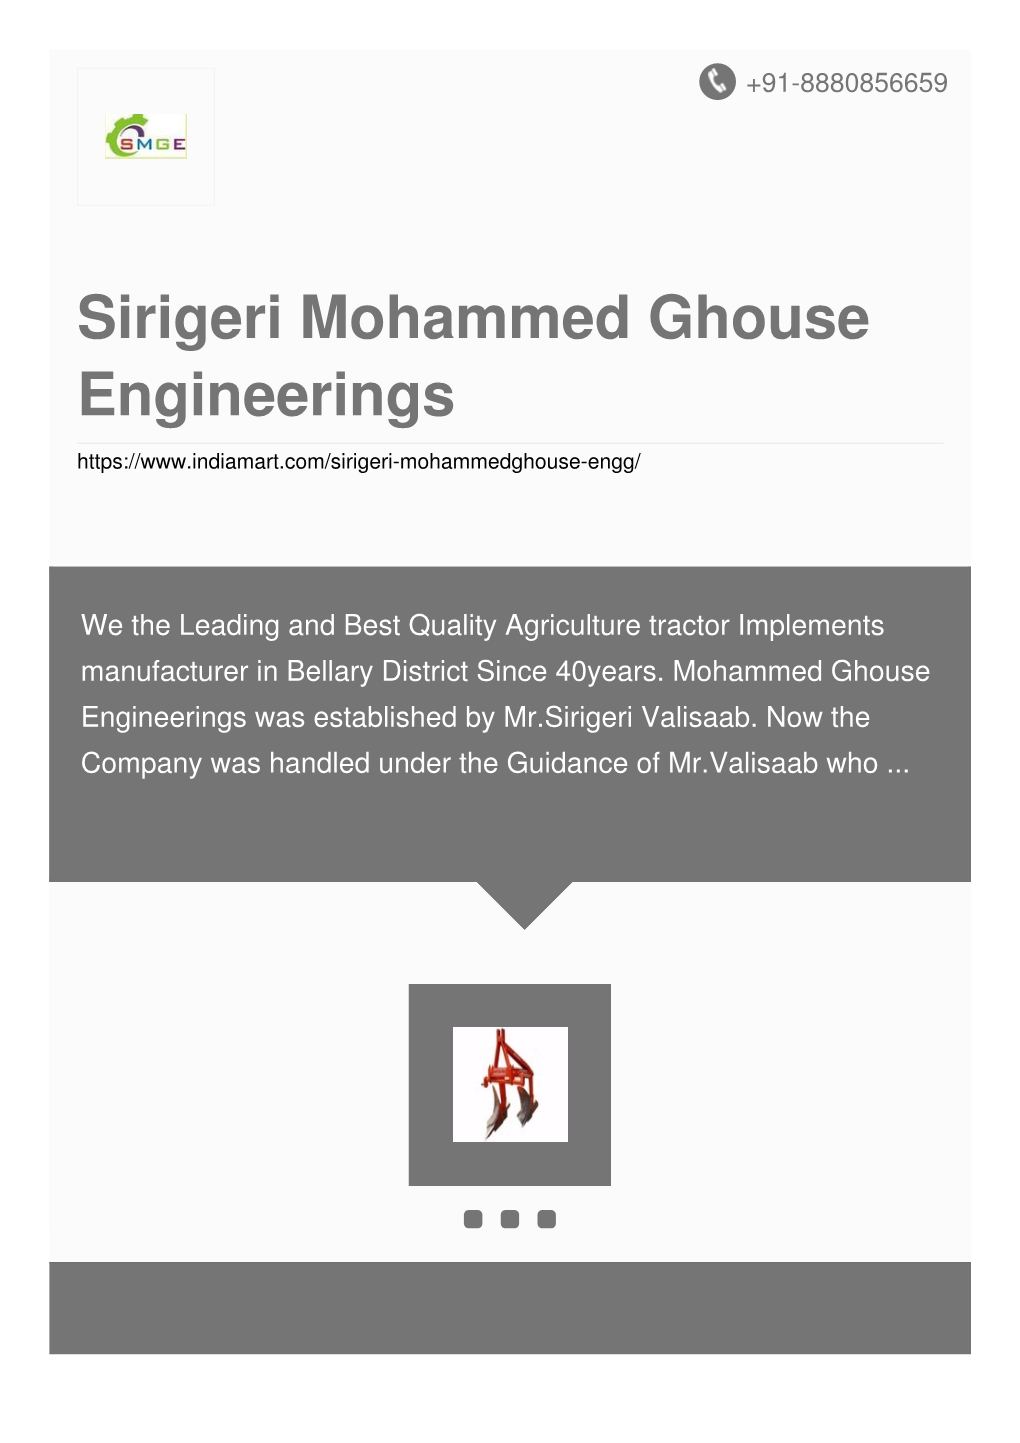 Sirigeri Mohammed Ghouse Engineerings